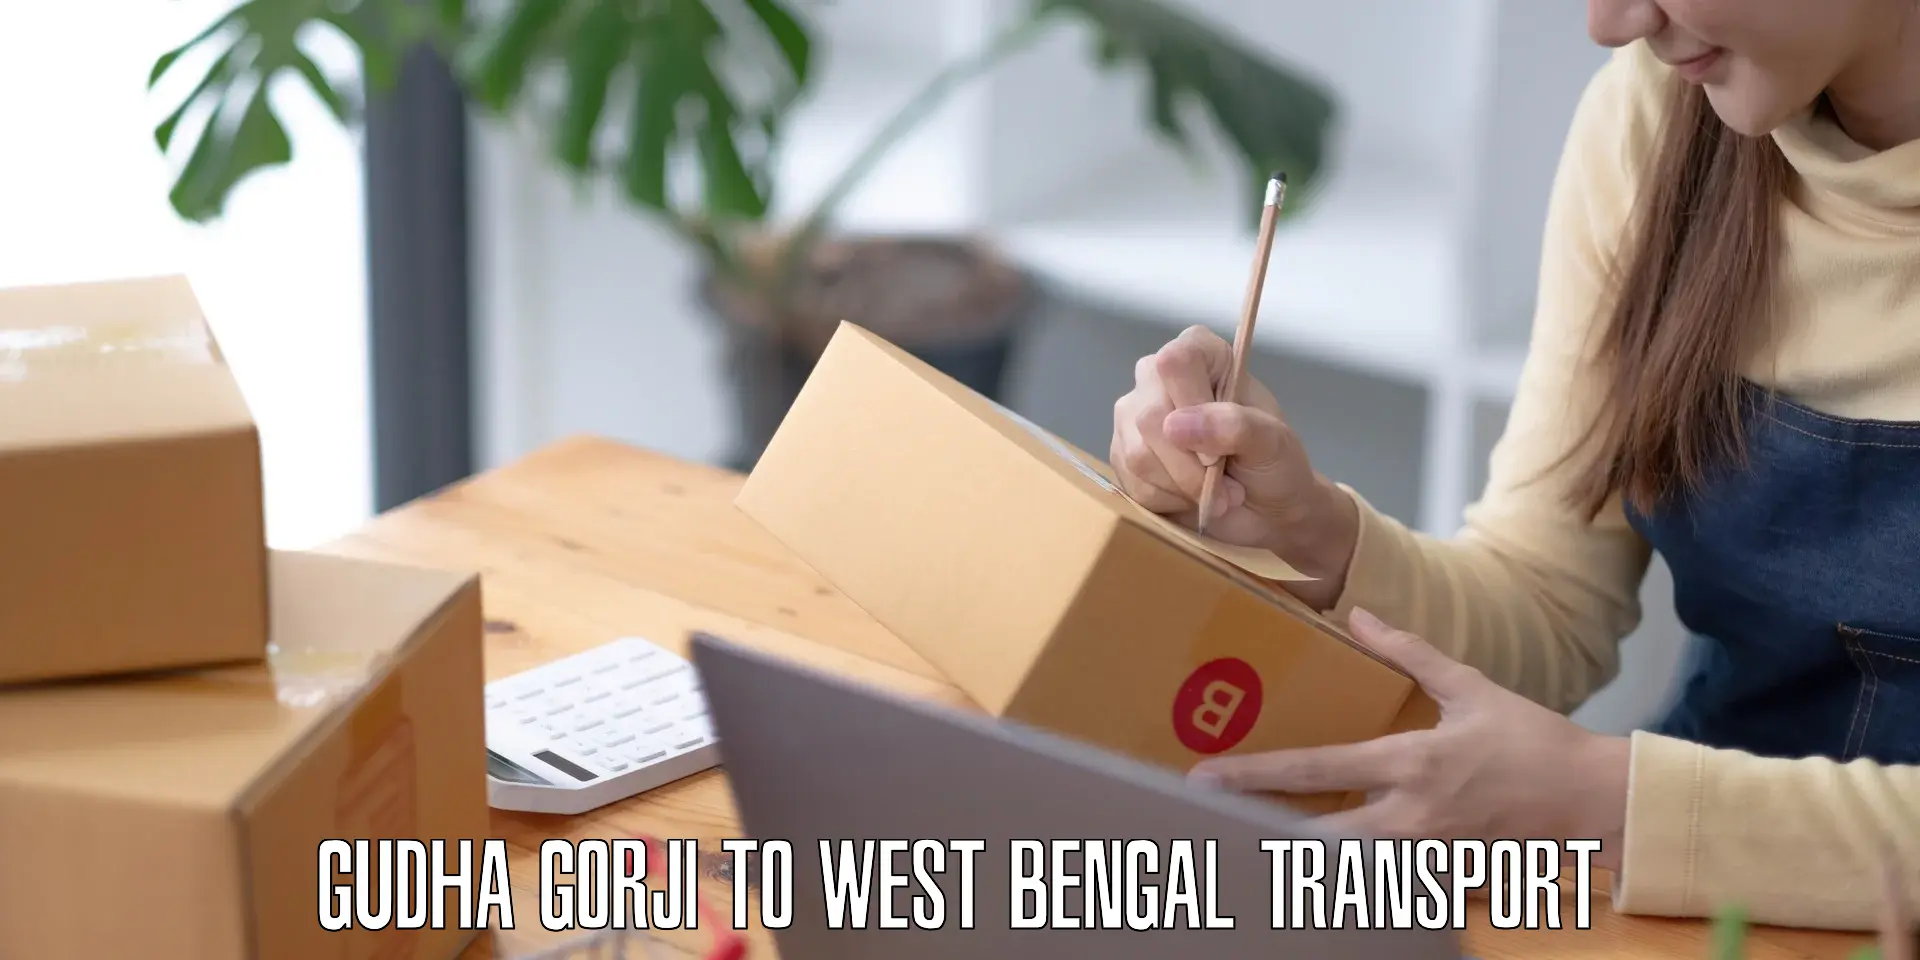 Intercity goods transport Gudha Gorji to Tollygunge